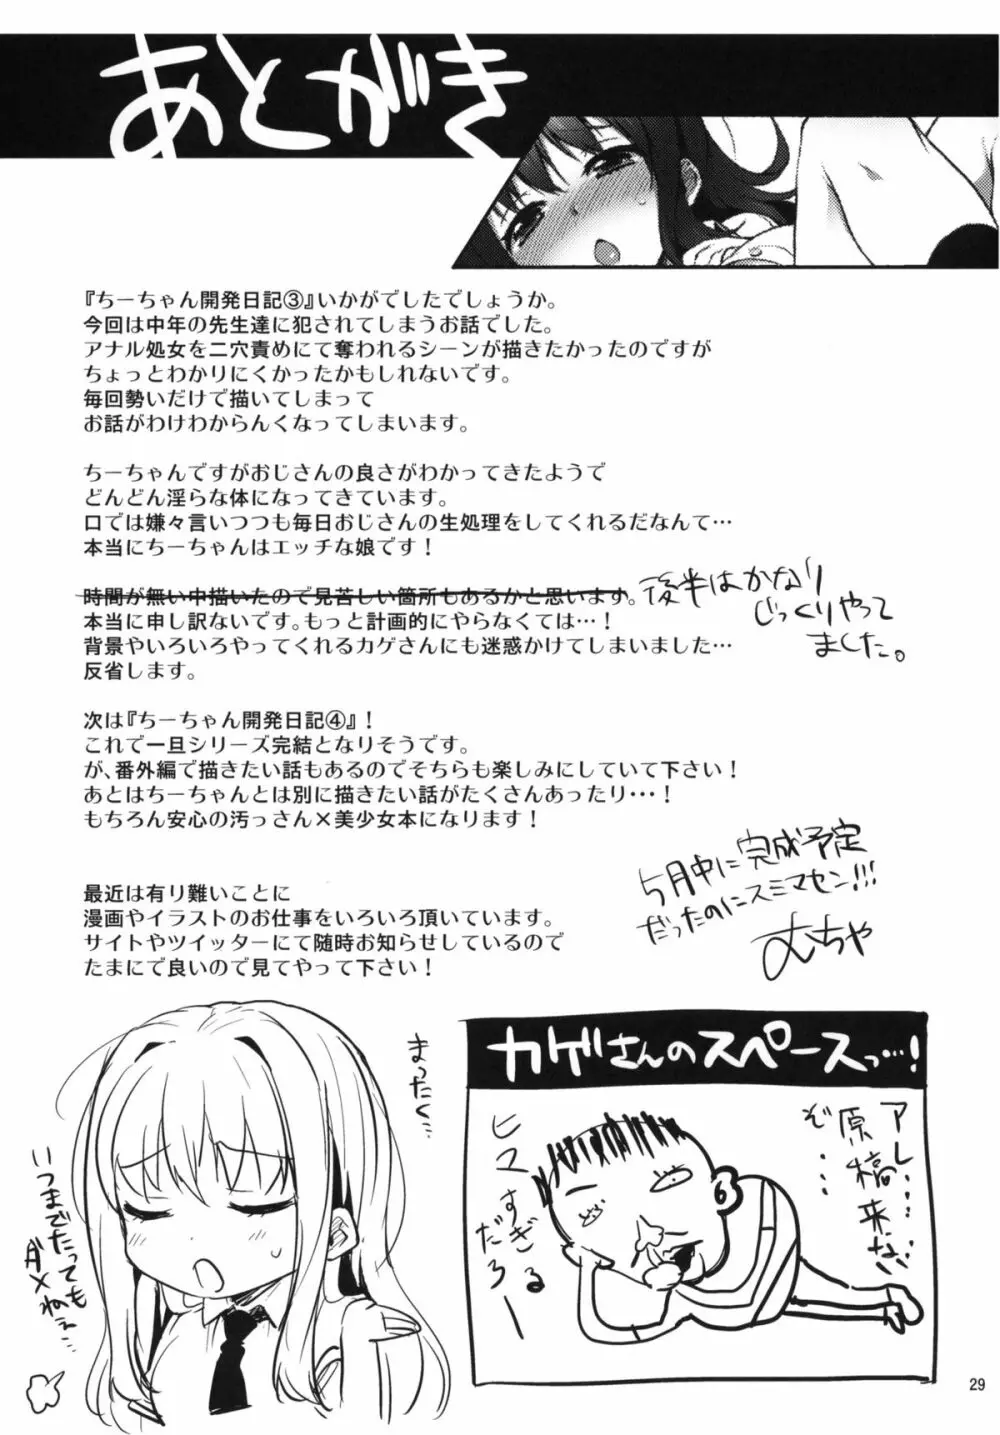 ちーちゃん開発日記3 28ページ